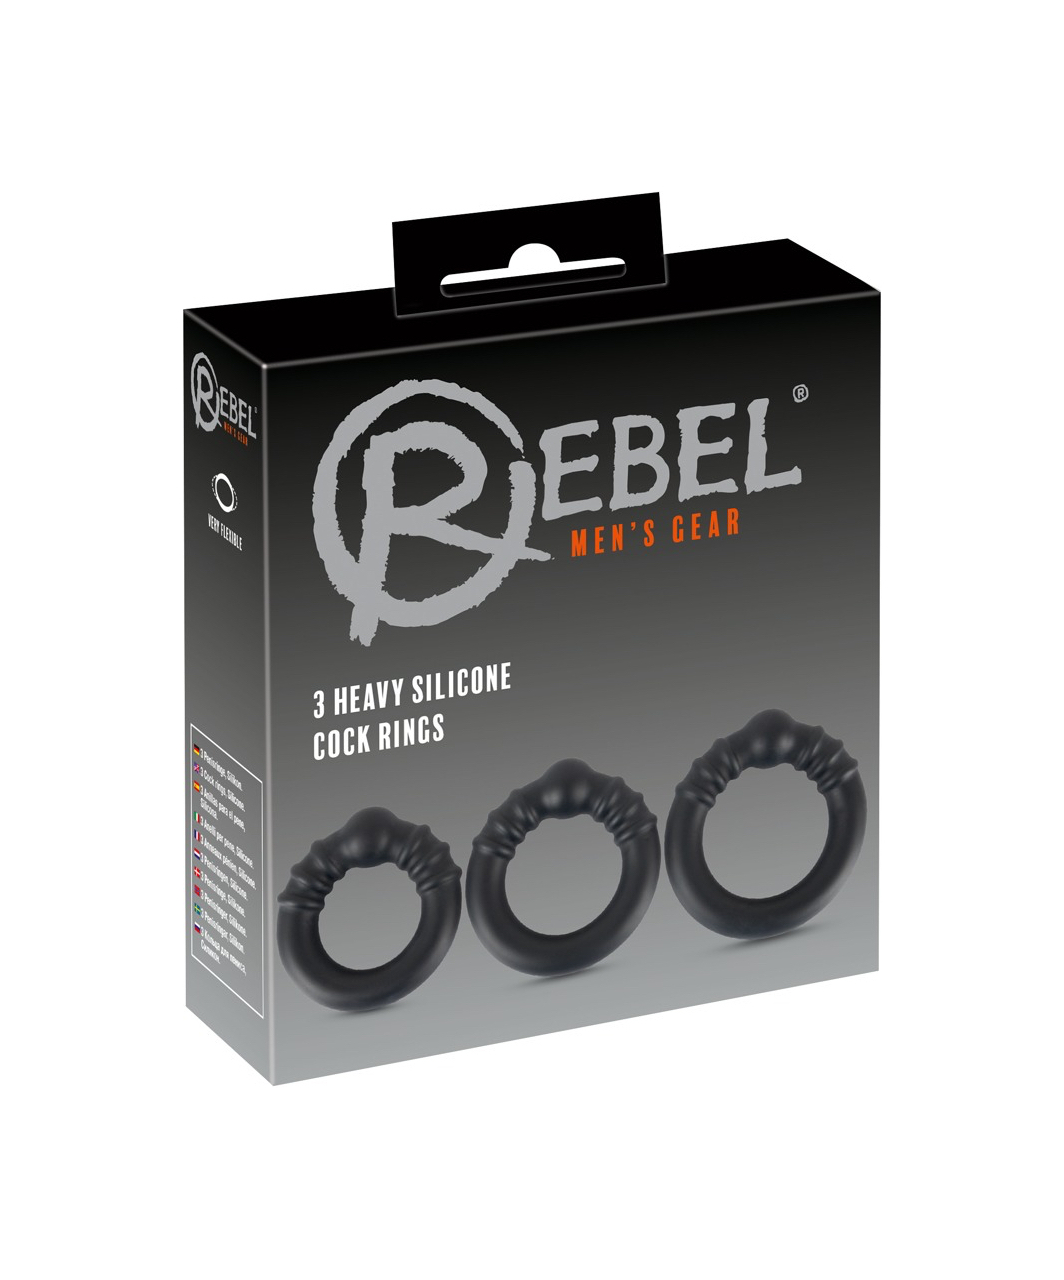 Rebel svertinių silikono penio žiedų komplektas